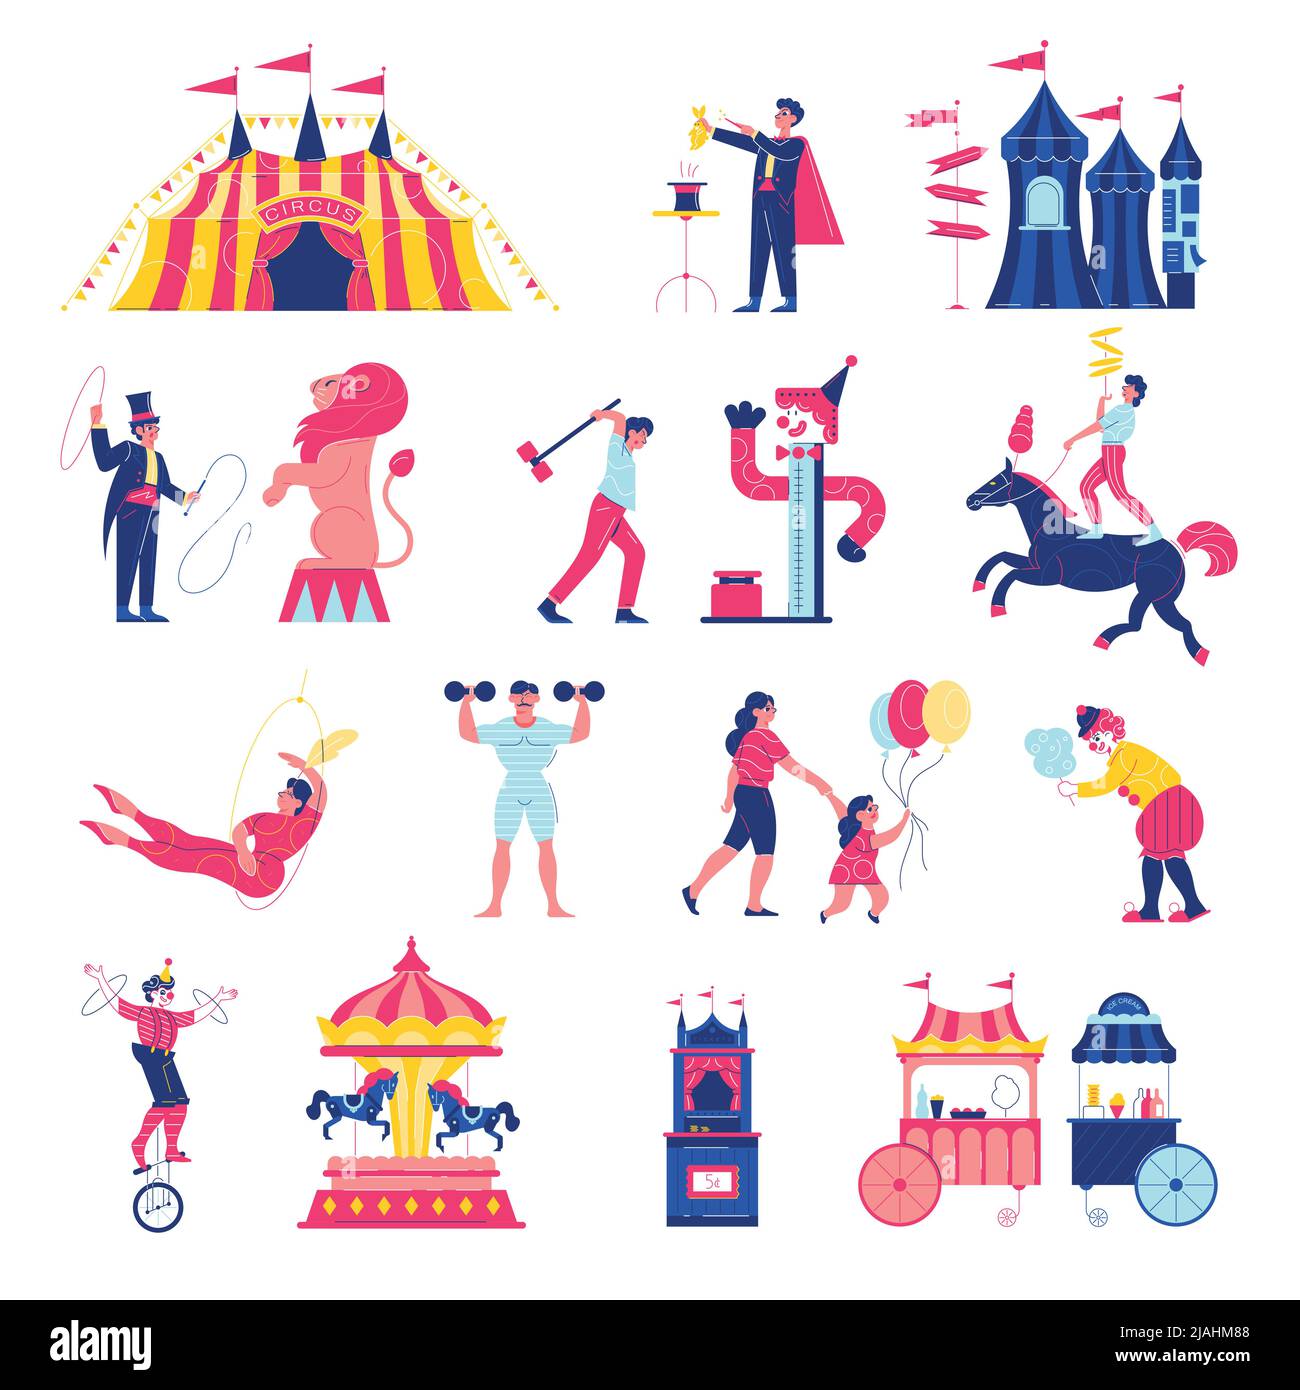 Il Circus funfair ambientato con icone isolate di grandi fairground di giostre di mercato e personaggi umani illustrazione vettoriale Illustrazione Vettoriale